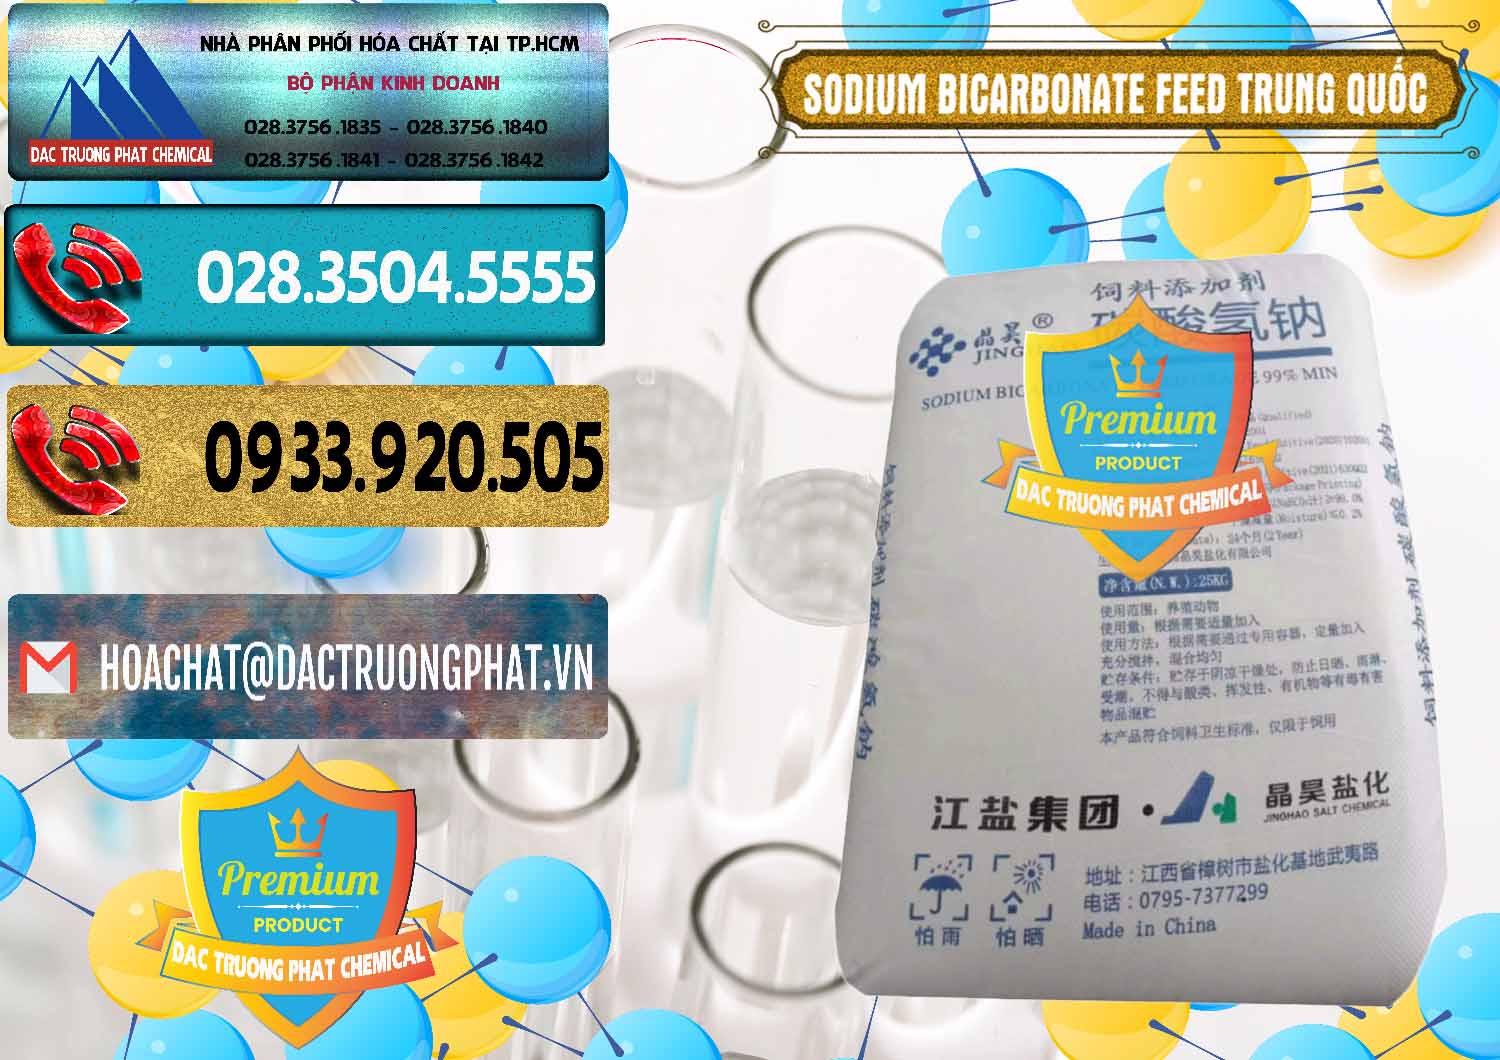 Cty chuyên cung cấp và bán Sodium Bicarbonate – Bicar NaHCO3 Feed Jing Hao Trung Quốc China - 0380 - Đơn vị chuyên kinh doanh & cung cấp hóa chất tại TP.HCM - hoachatdetnhuom.com